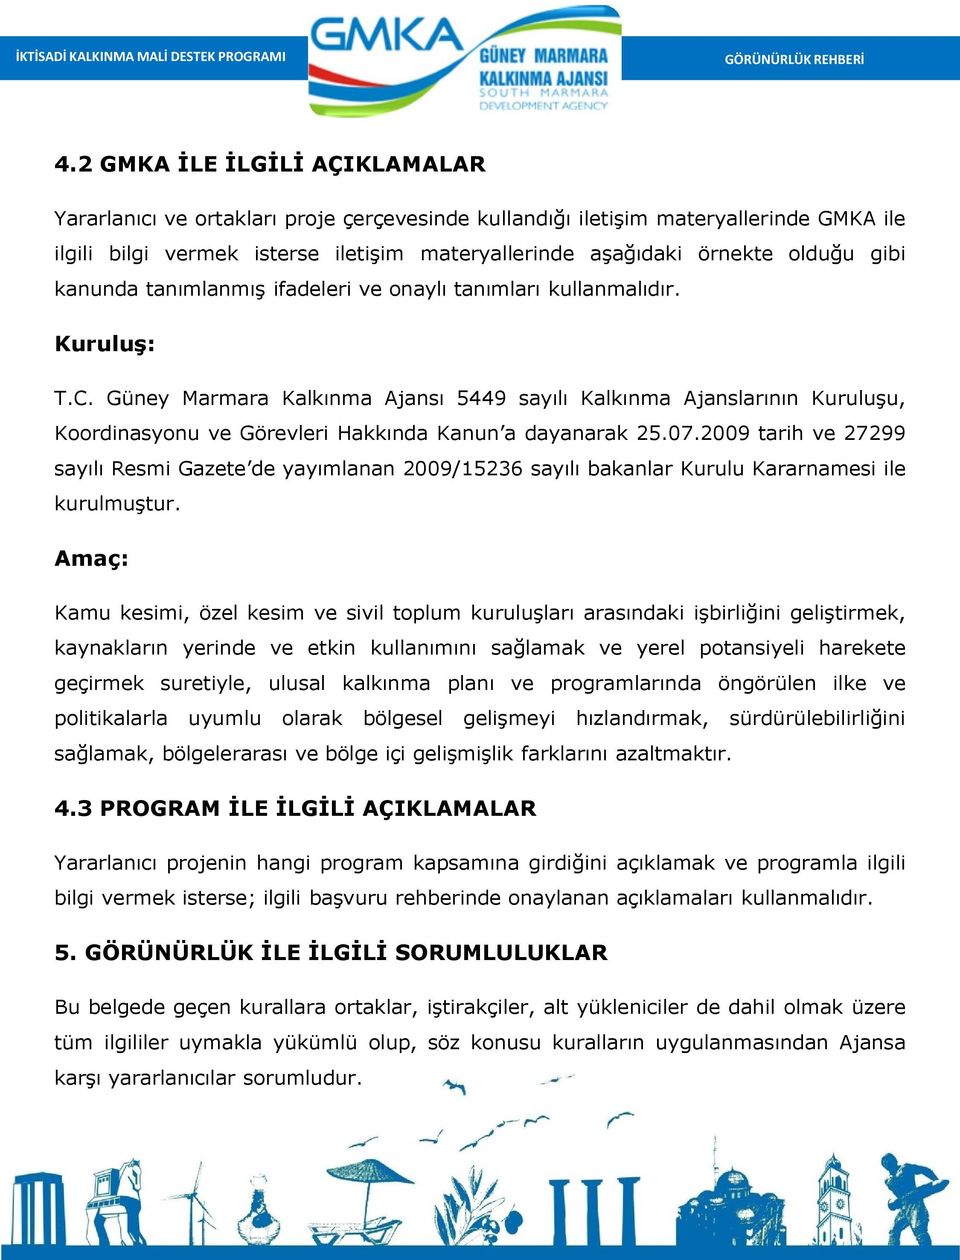 Güney Marmara Kalkınma Ajansı 5449 sayılı Kalkınma Ajanslarının Kuruluşu, Koordinasyonu ve Görevleri Hakkında Kanun a dayanarak 25.07.